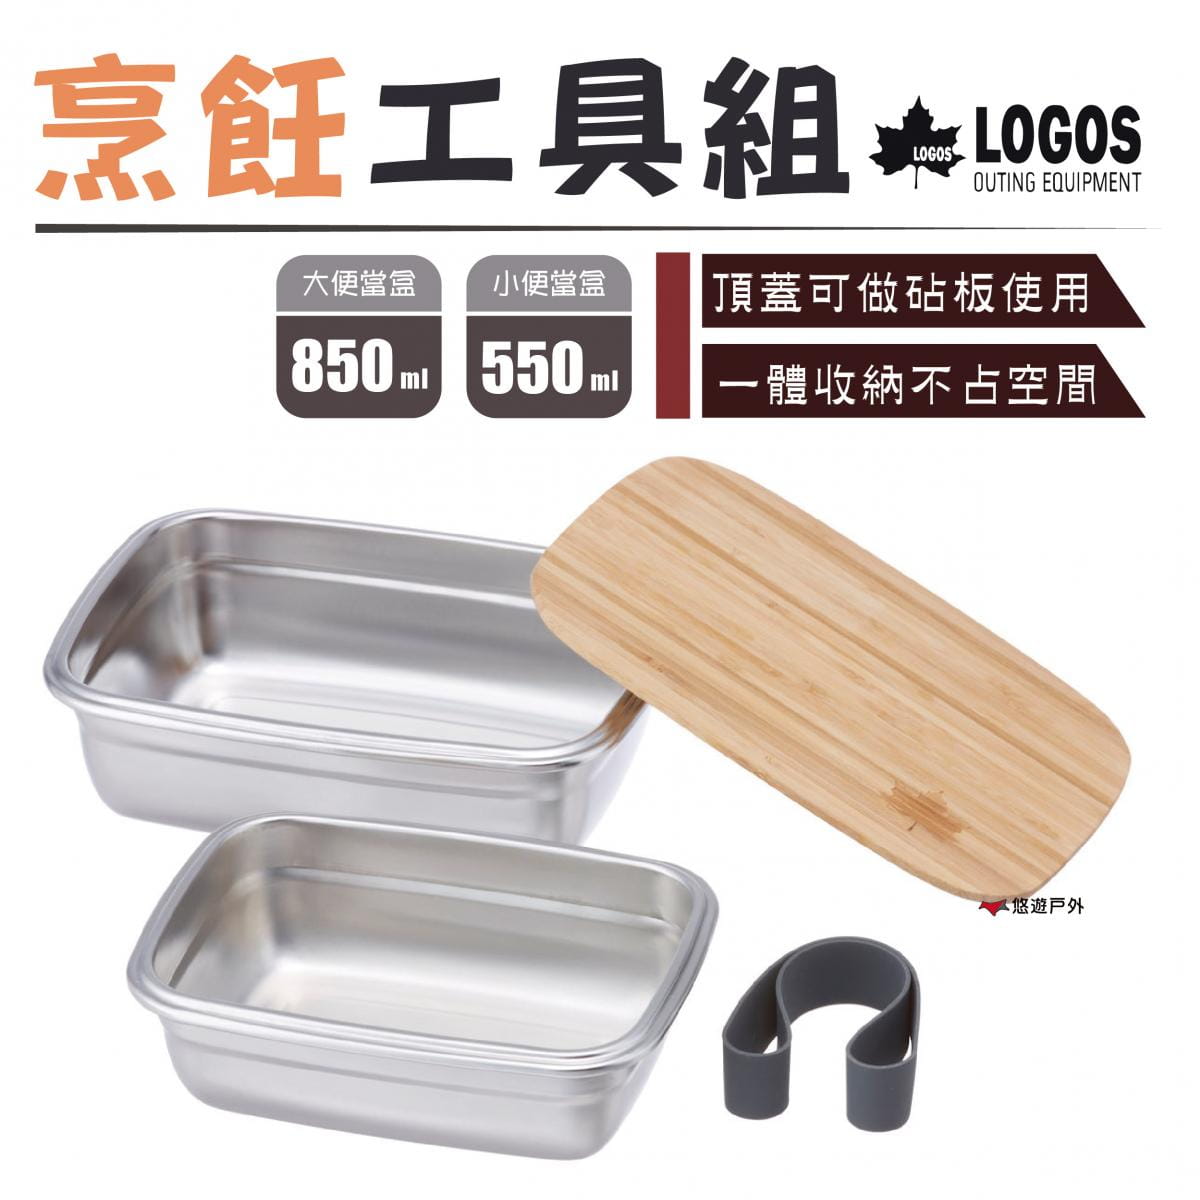 【日本LOGOS】烹飪工具組 LG88230241 0